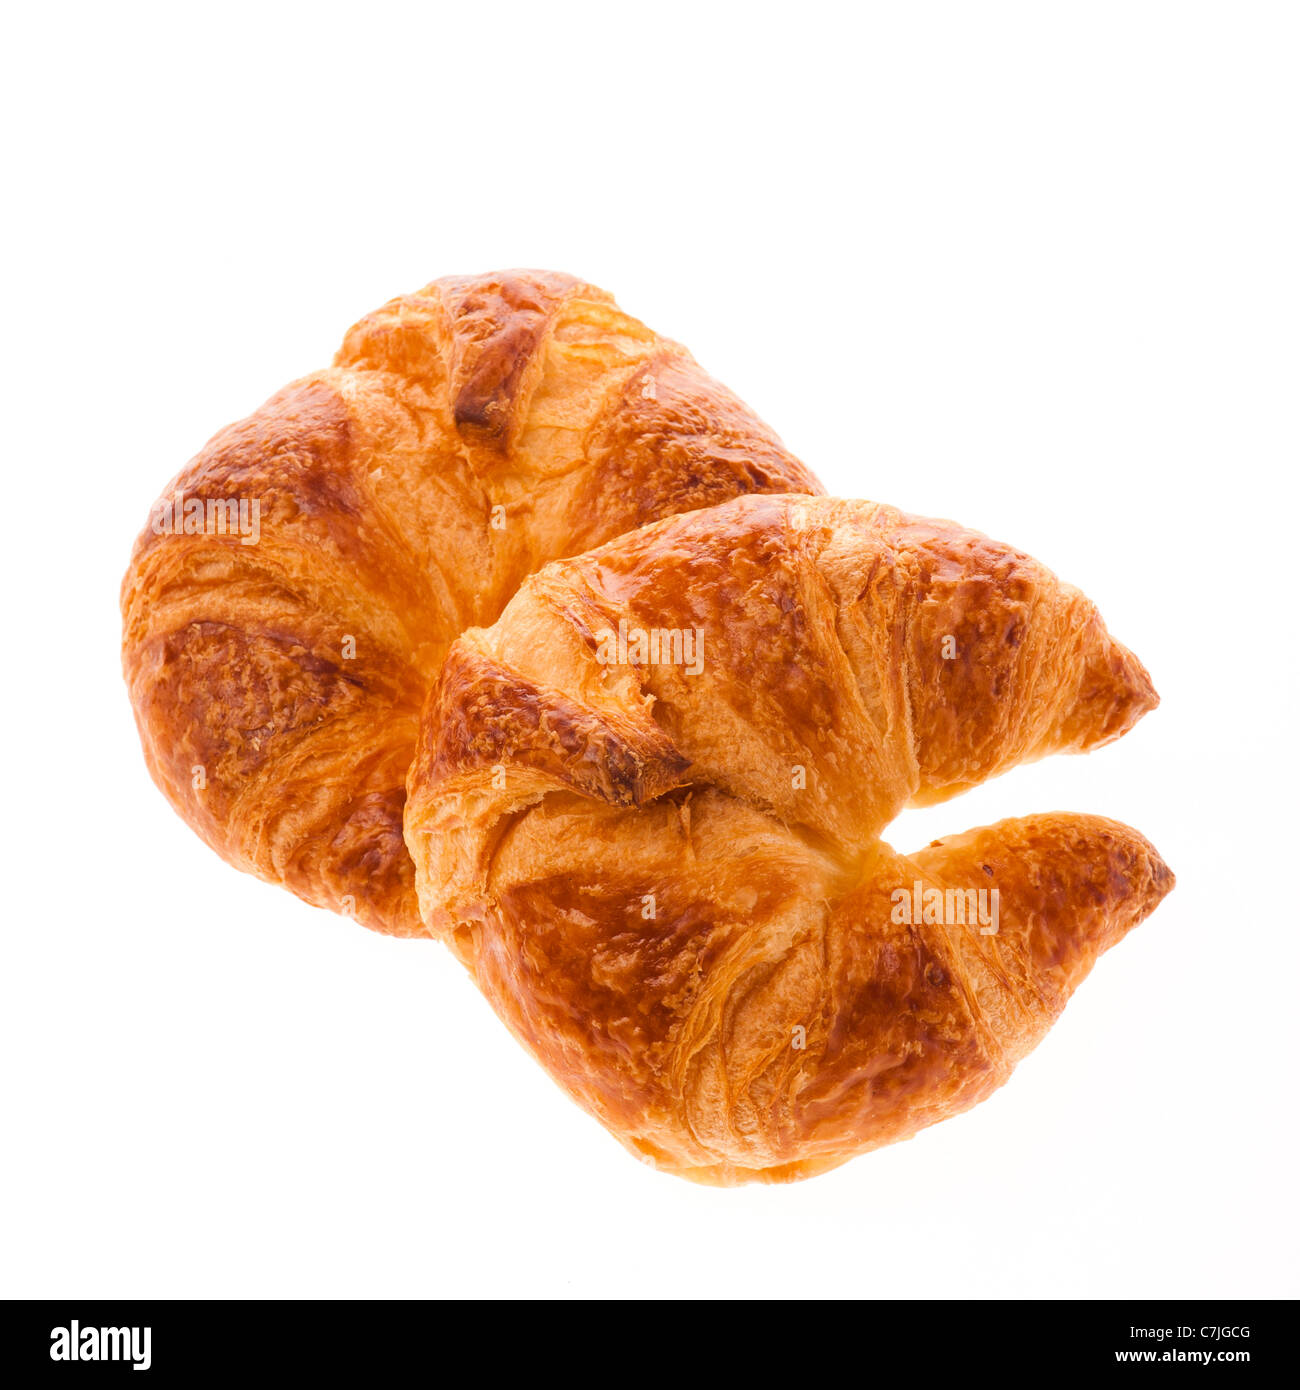 Ein paar von frisch gebackenen Croissants auf einem weißen Hintergrundbeleuchtung-Hintergrund Stockfoto